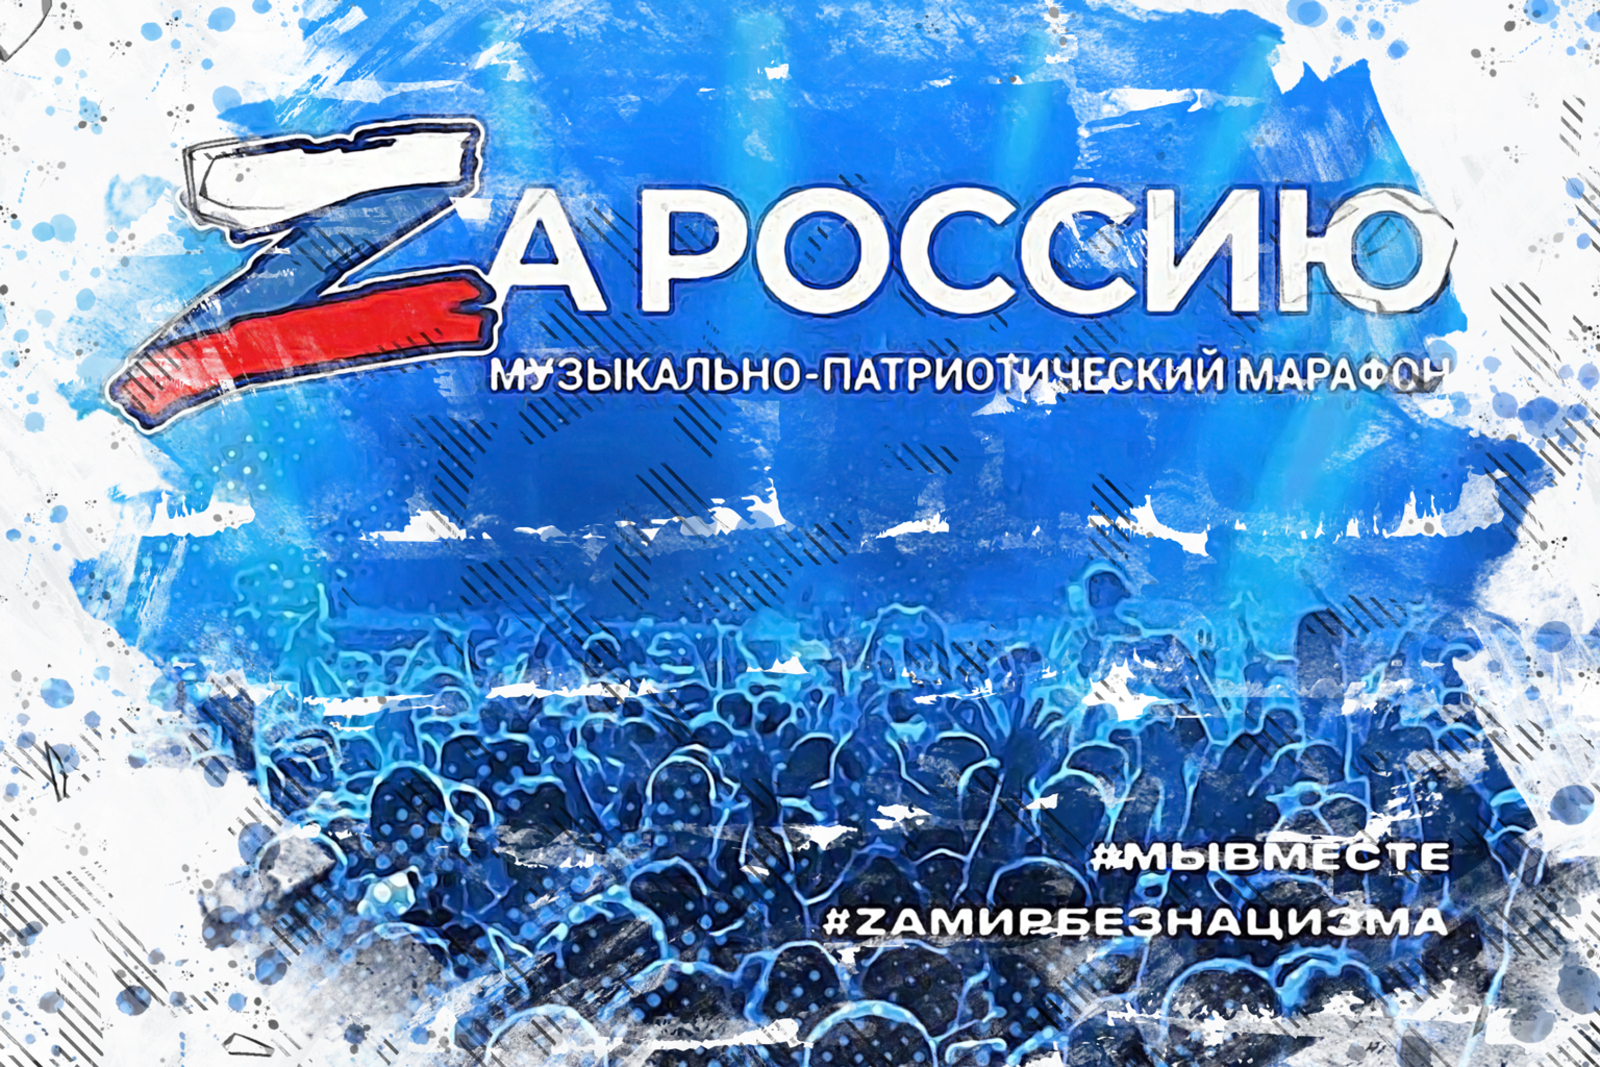 Жители Башкортостана примут участие в музыкально-патриотическом марафоне «ZaРоссию».